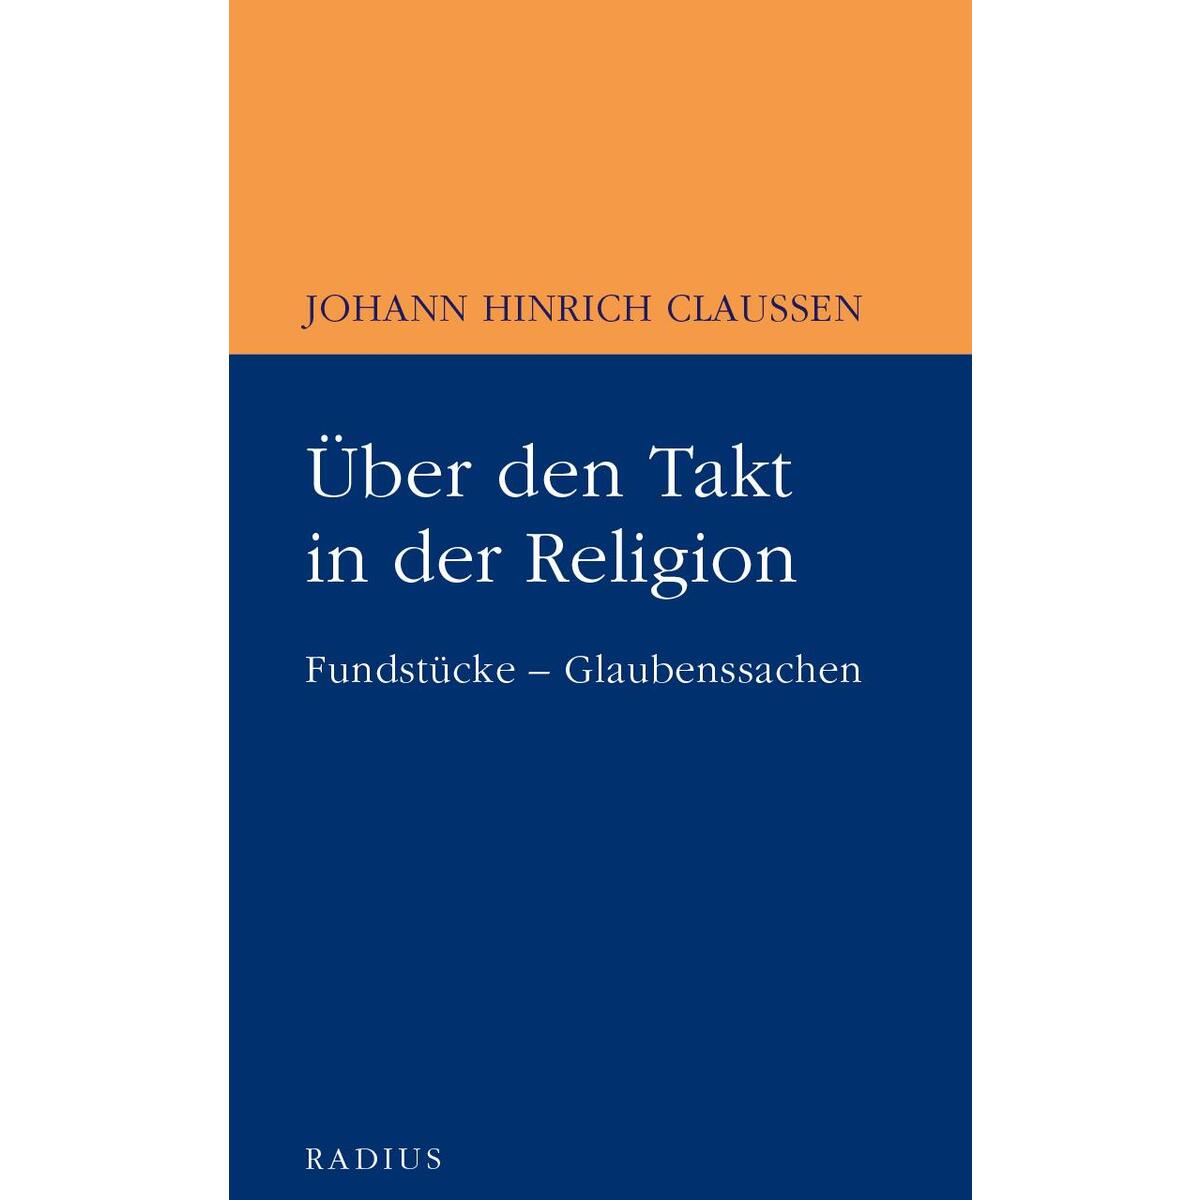 Über den Takt in der Religion von Radius-Verlag GmbH